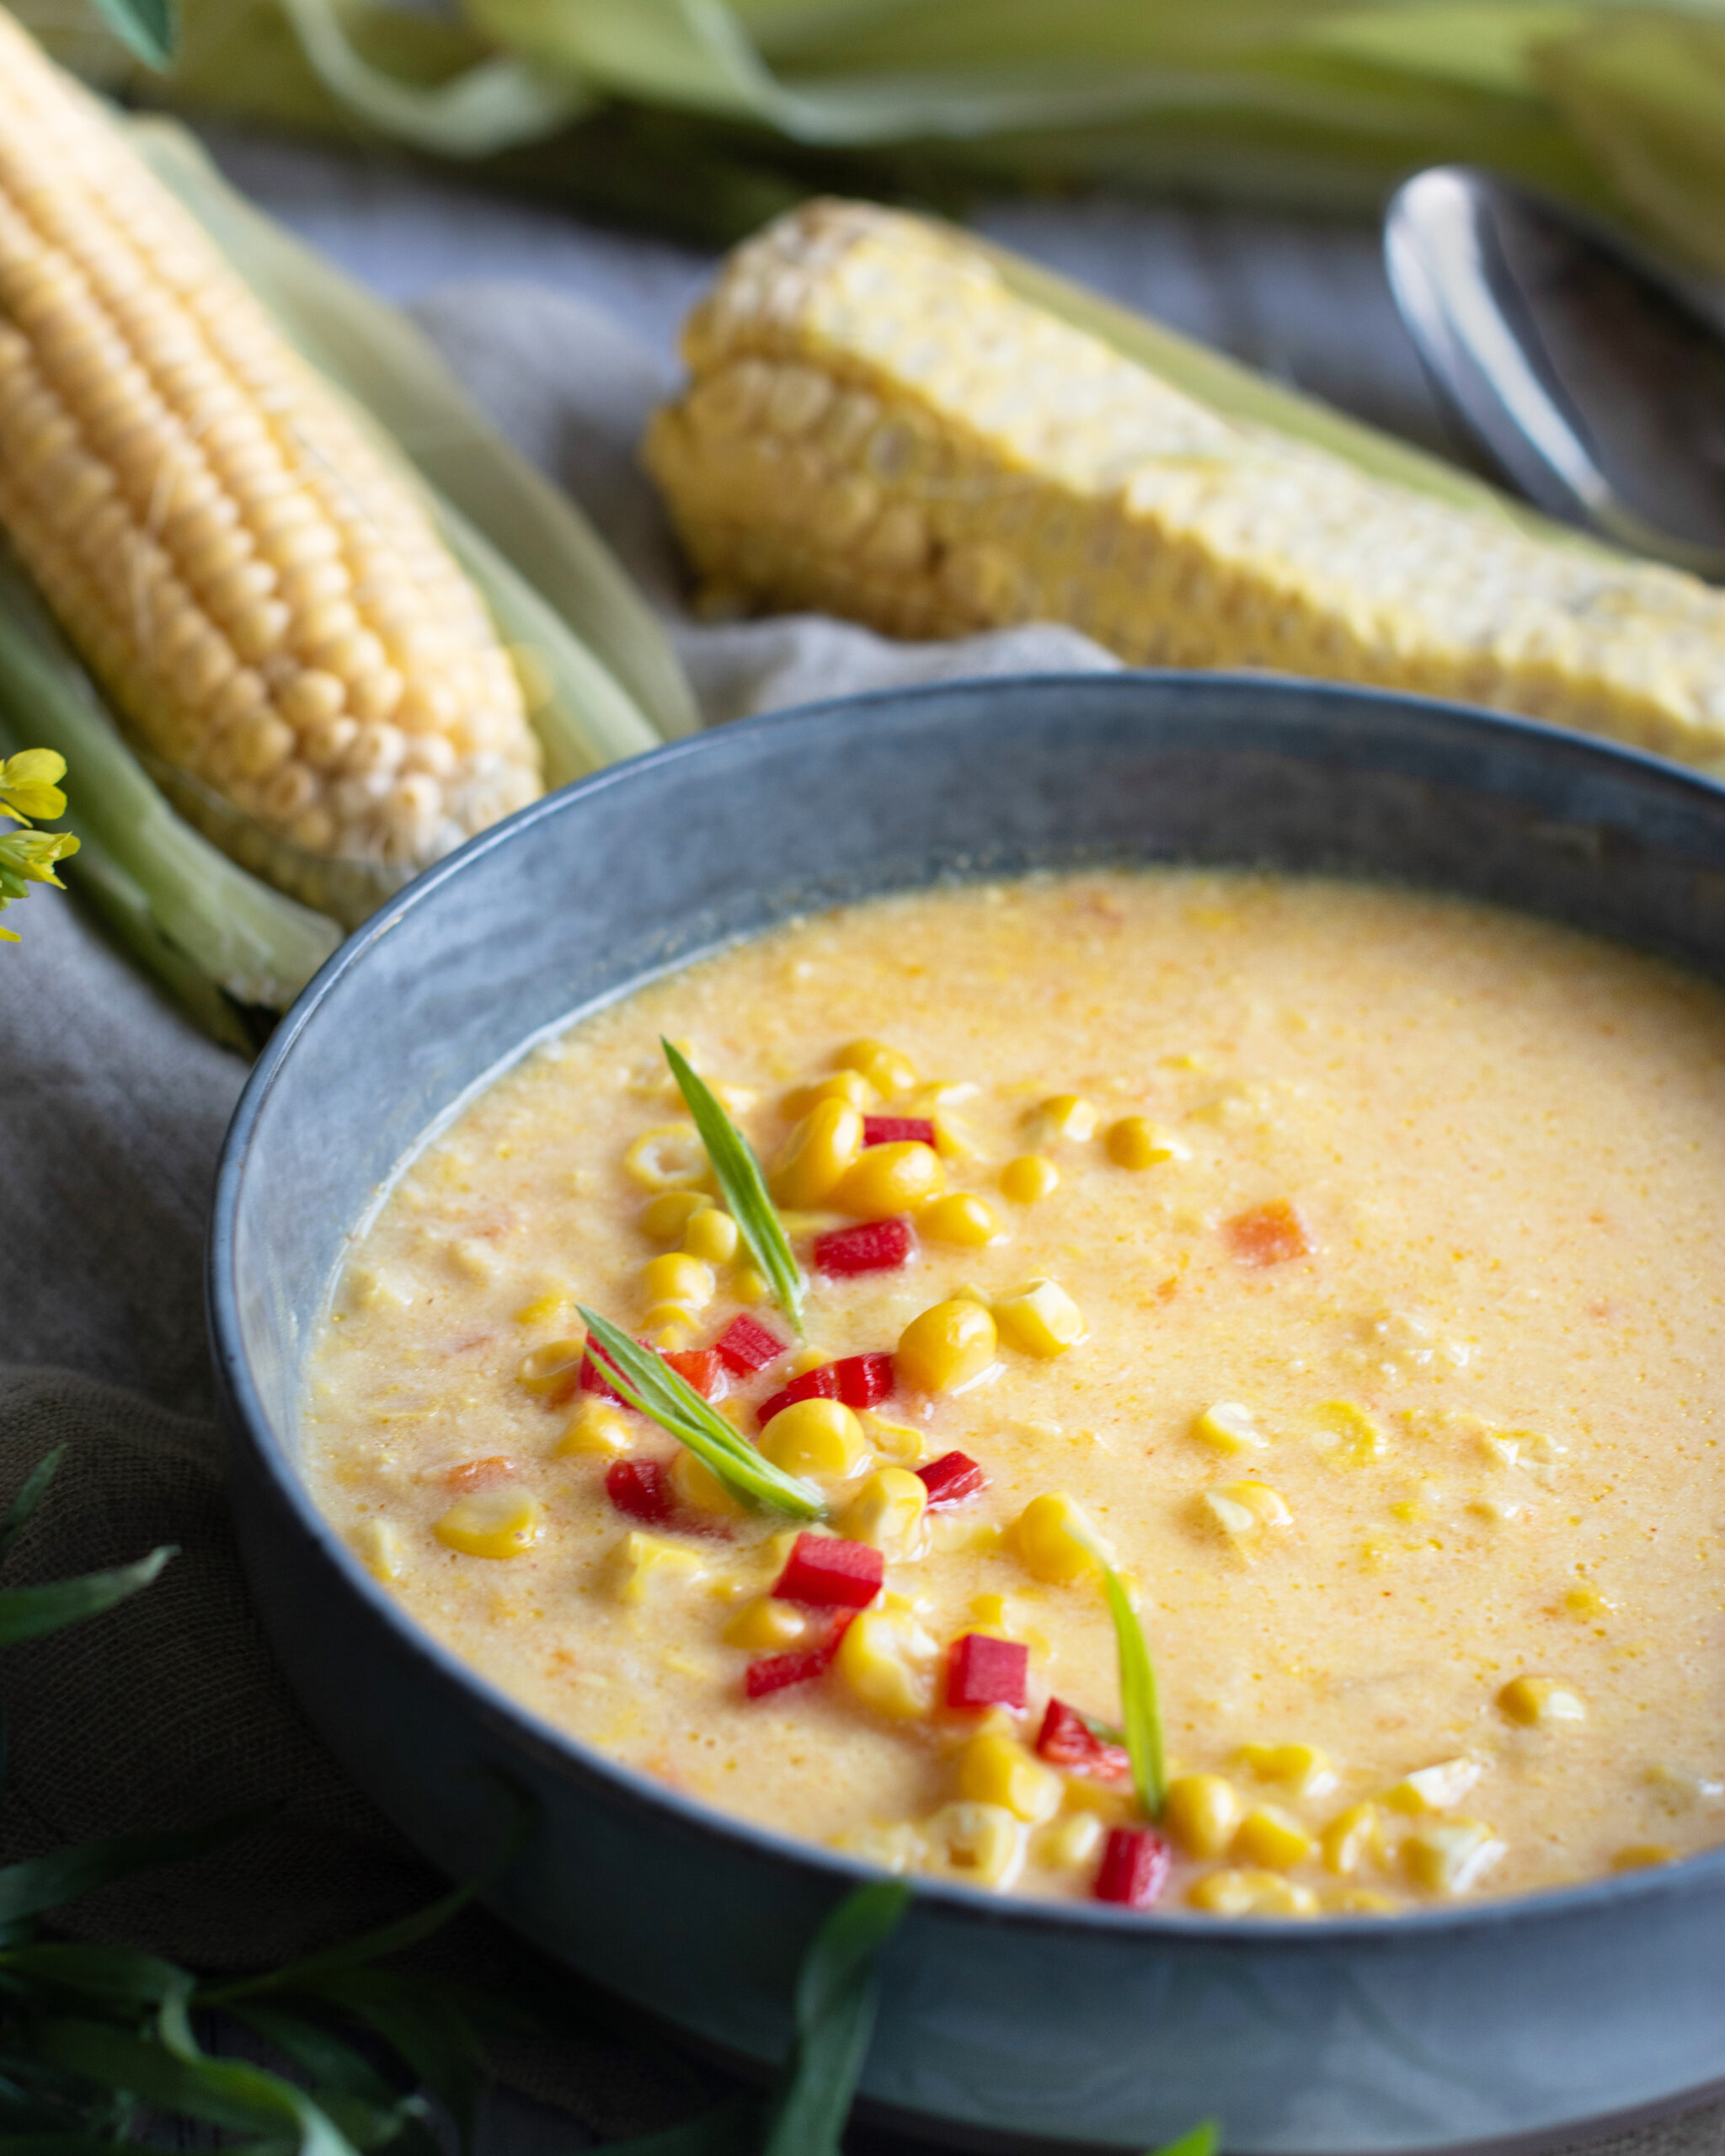 Soupe de maïs (corn chowder)